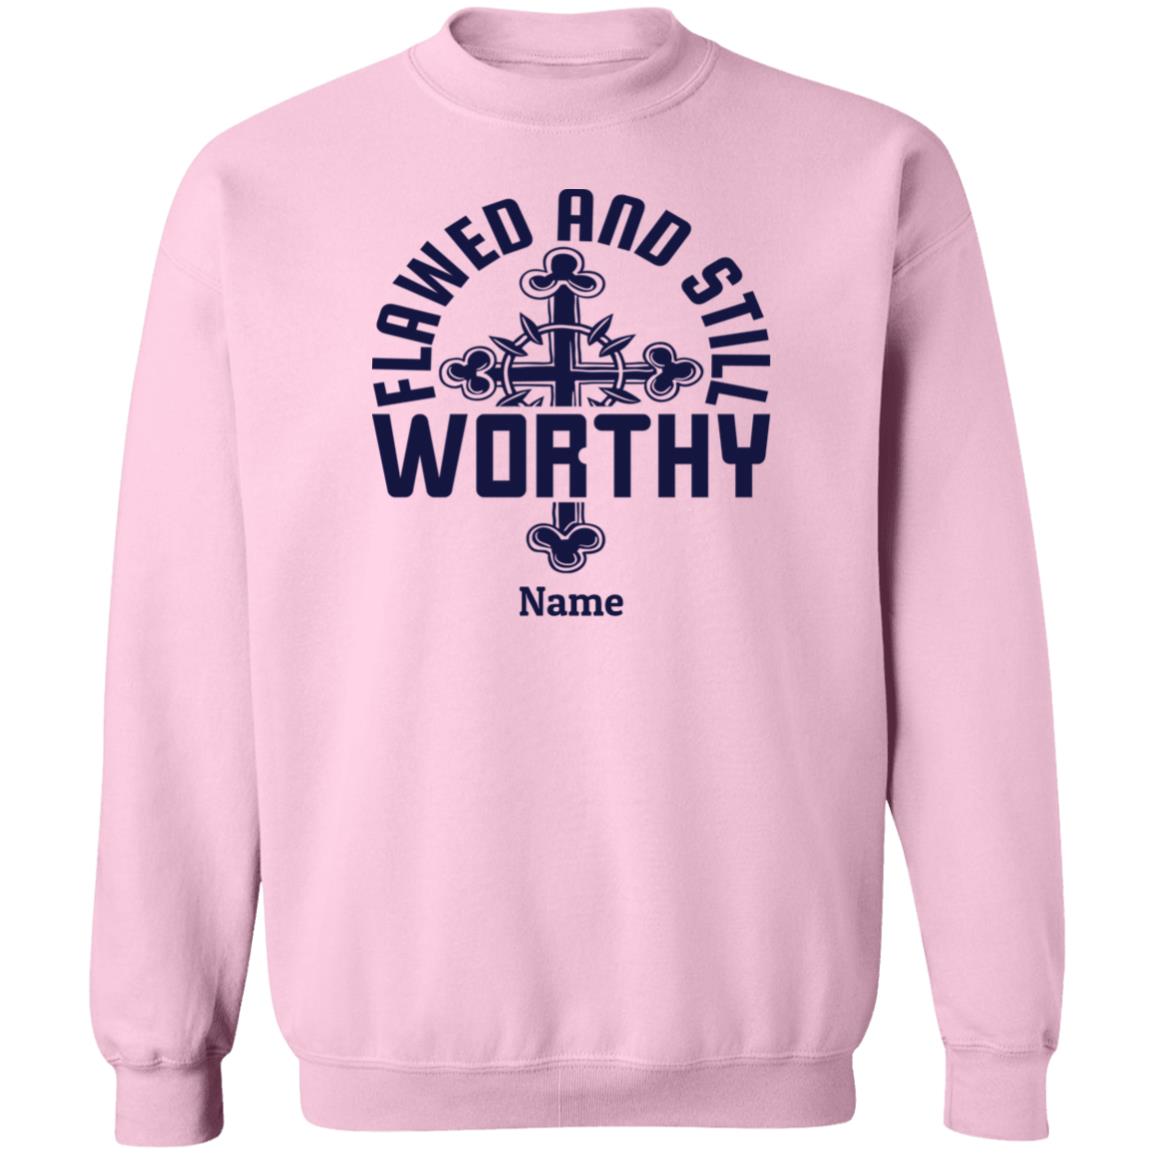 Flawed & Still Worthy Personalizable Sweatshirt